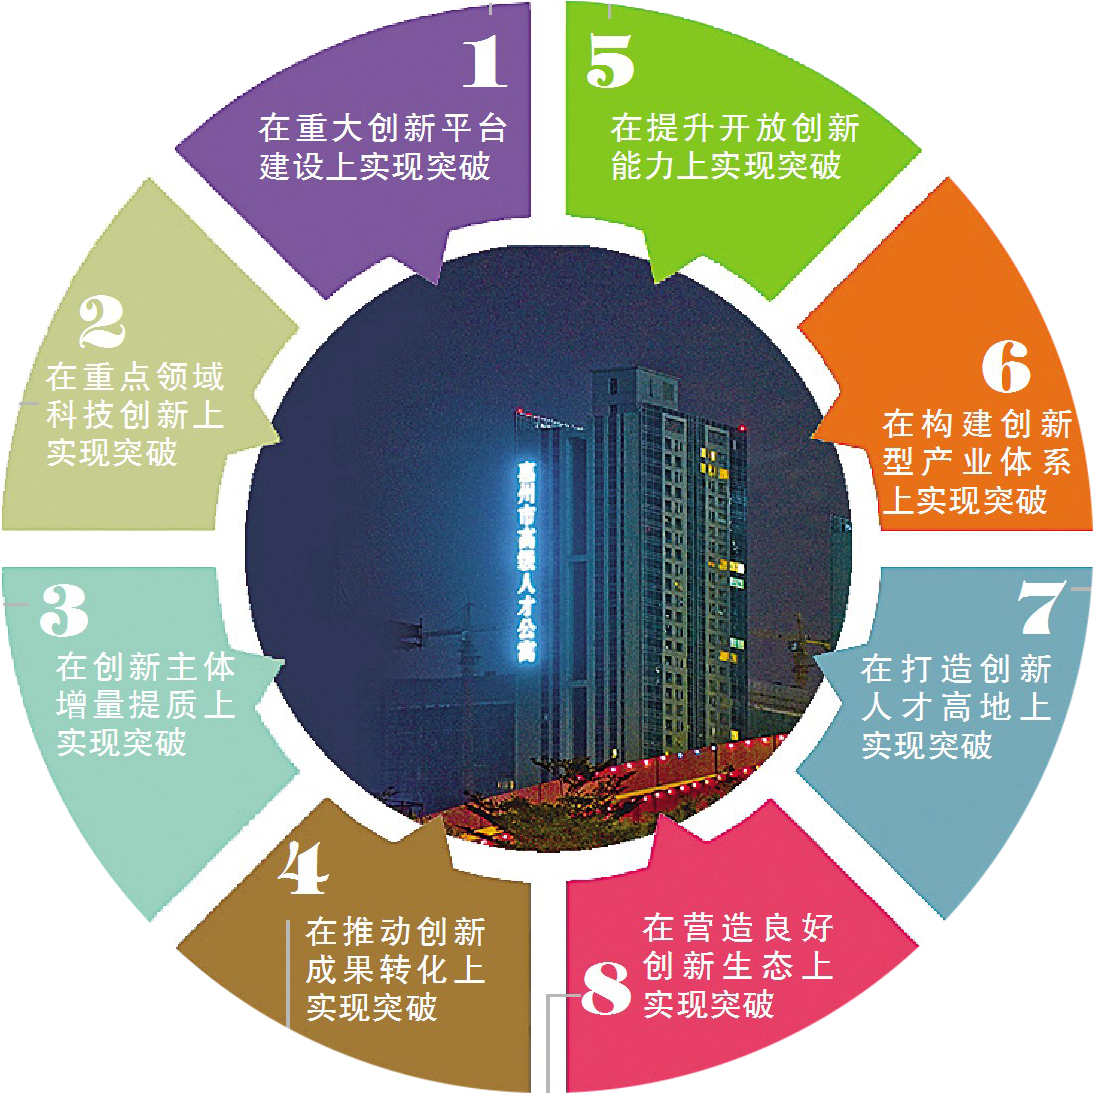 惠州着力整合创新要素 加快建广东硅谷